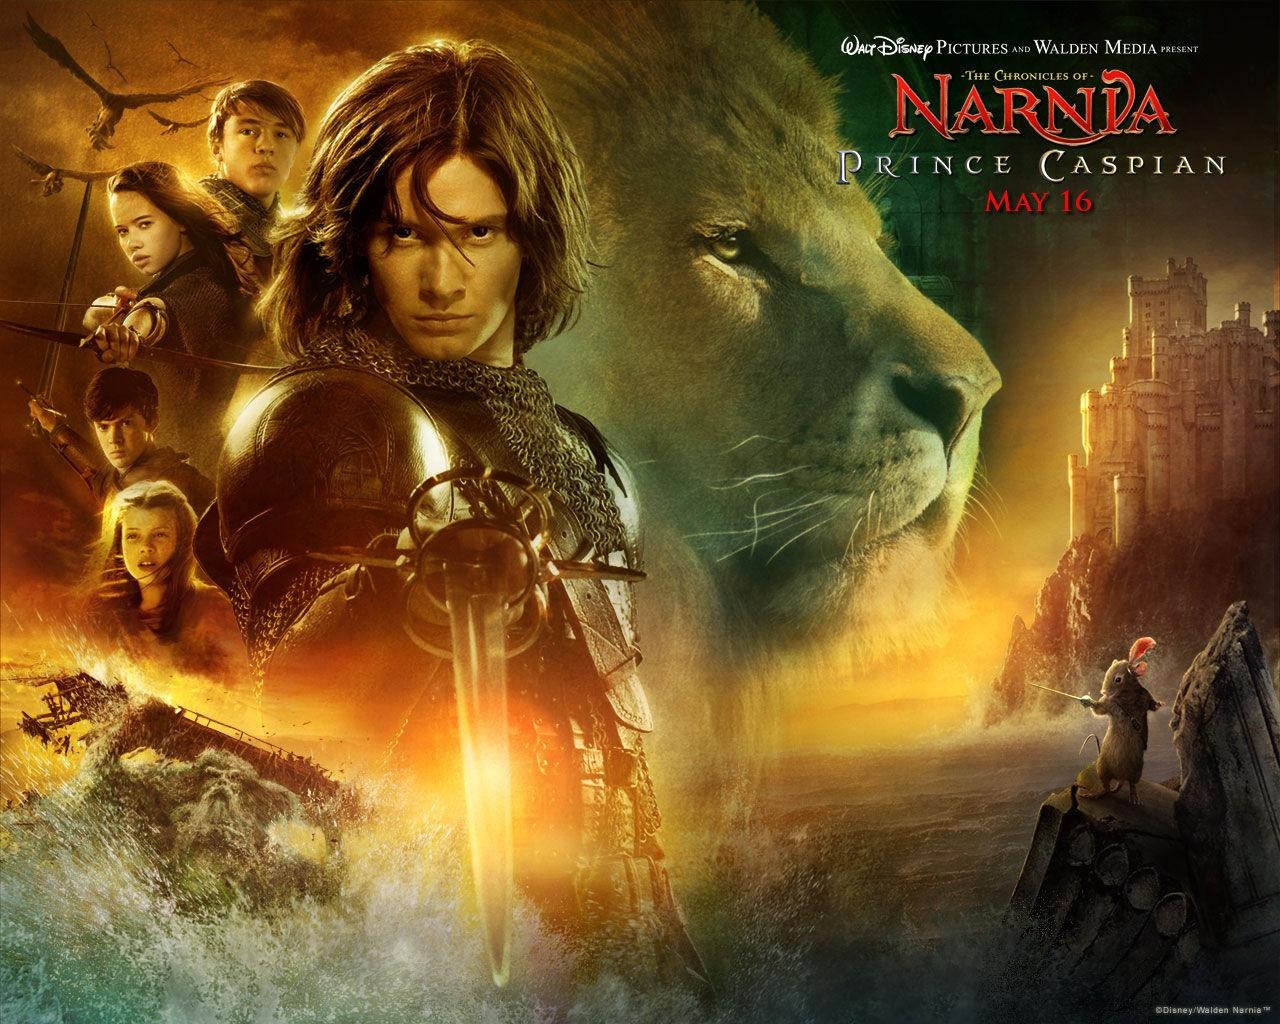 Le Monde de Narnia 2: Prince Caspian #3 - 1280x1024